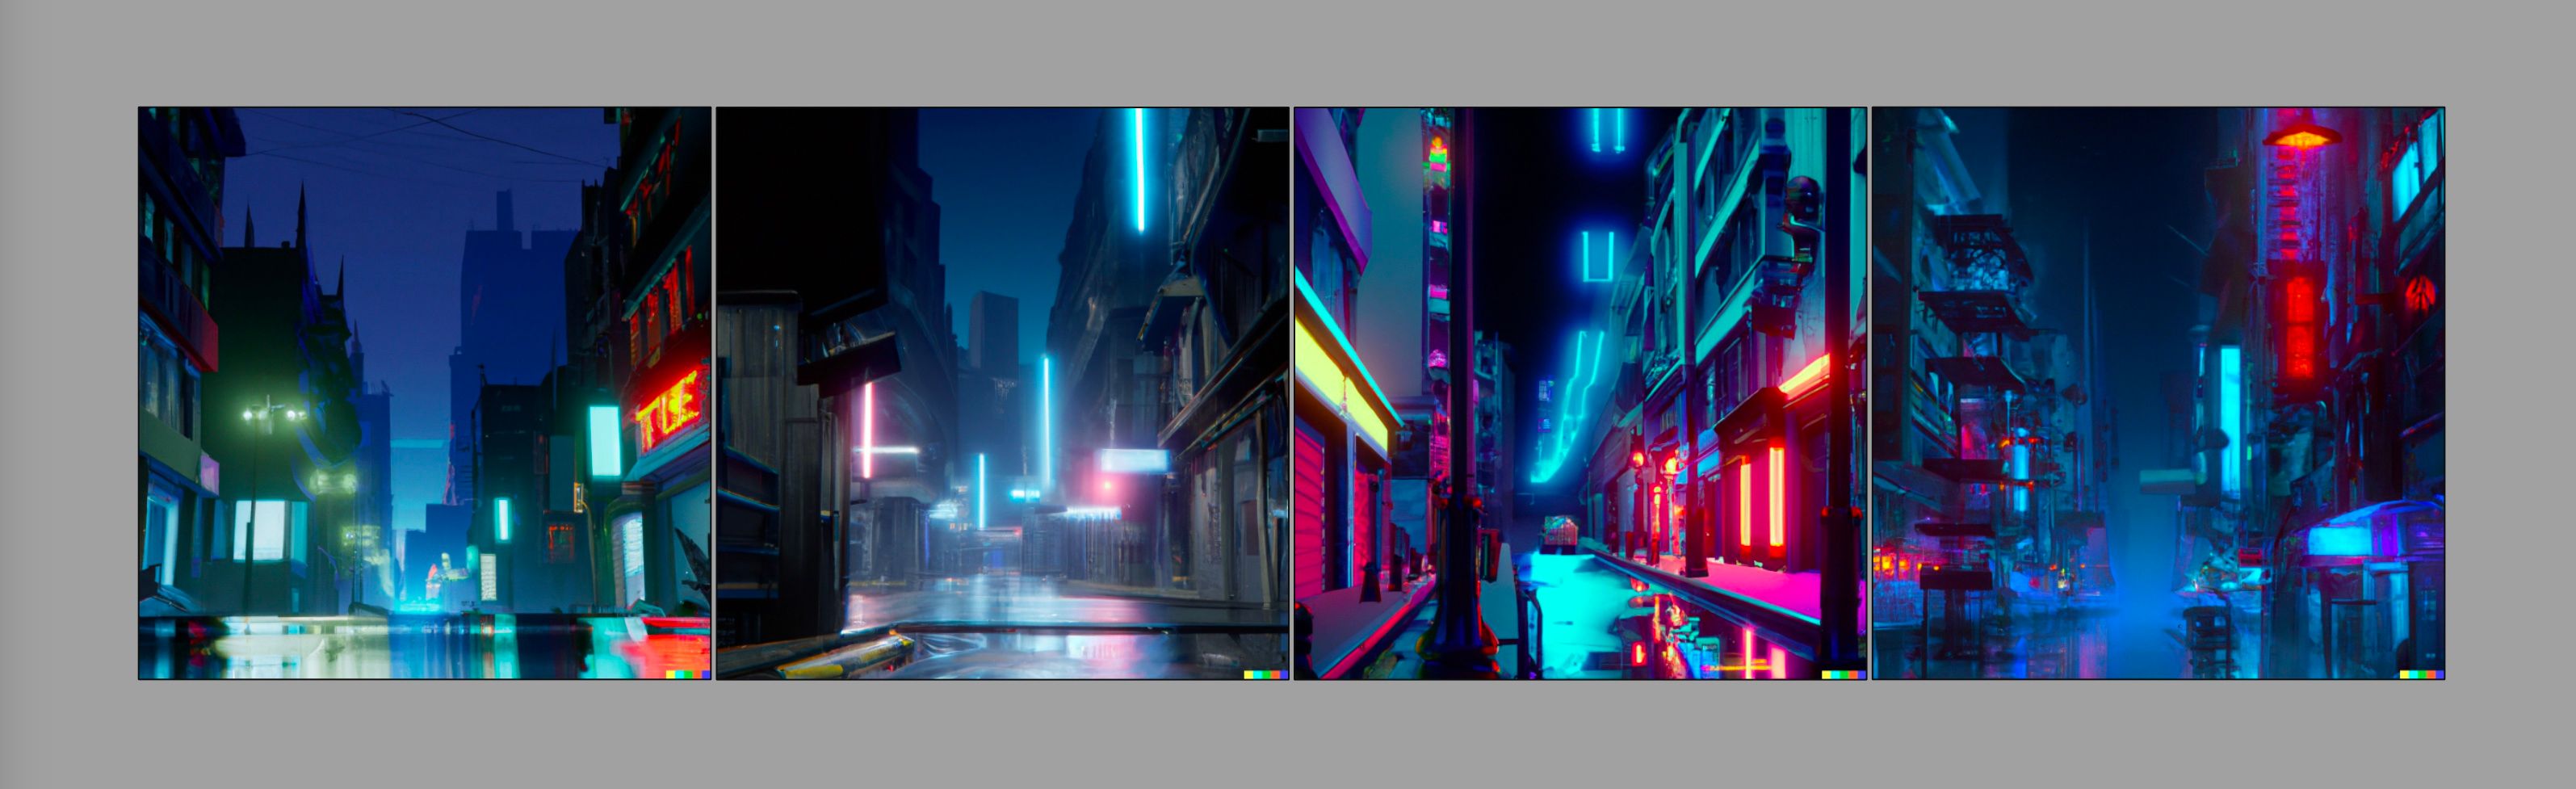 Quatre images d'une rue urbaine de style cyberpunk, générées avec Dall-E